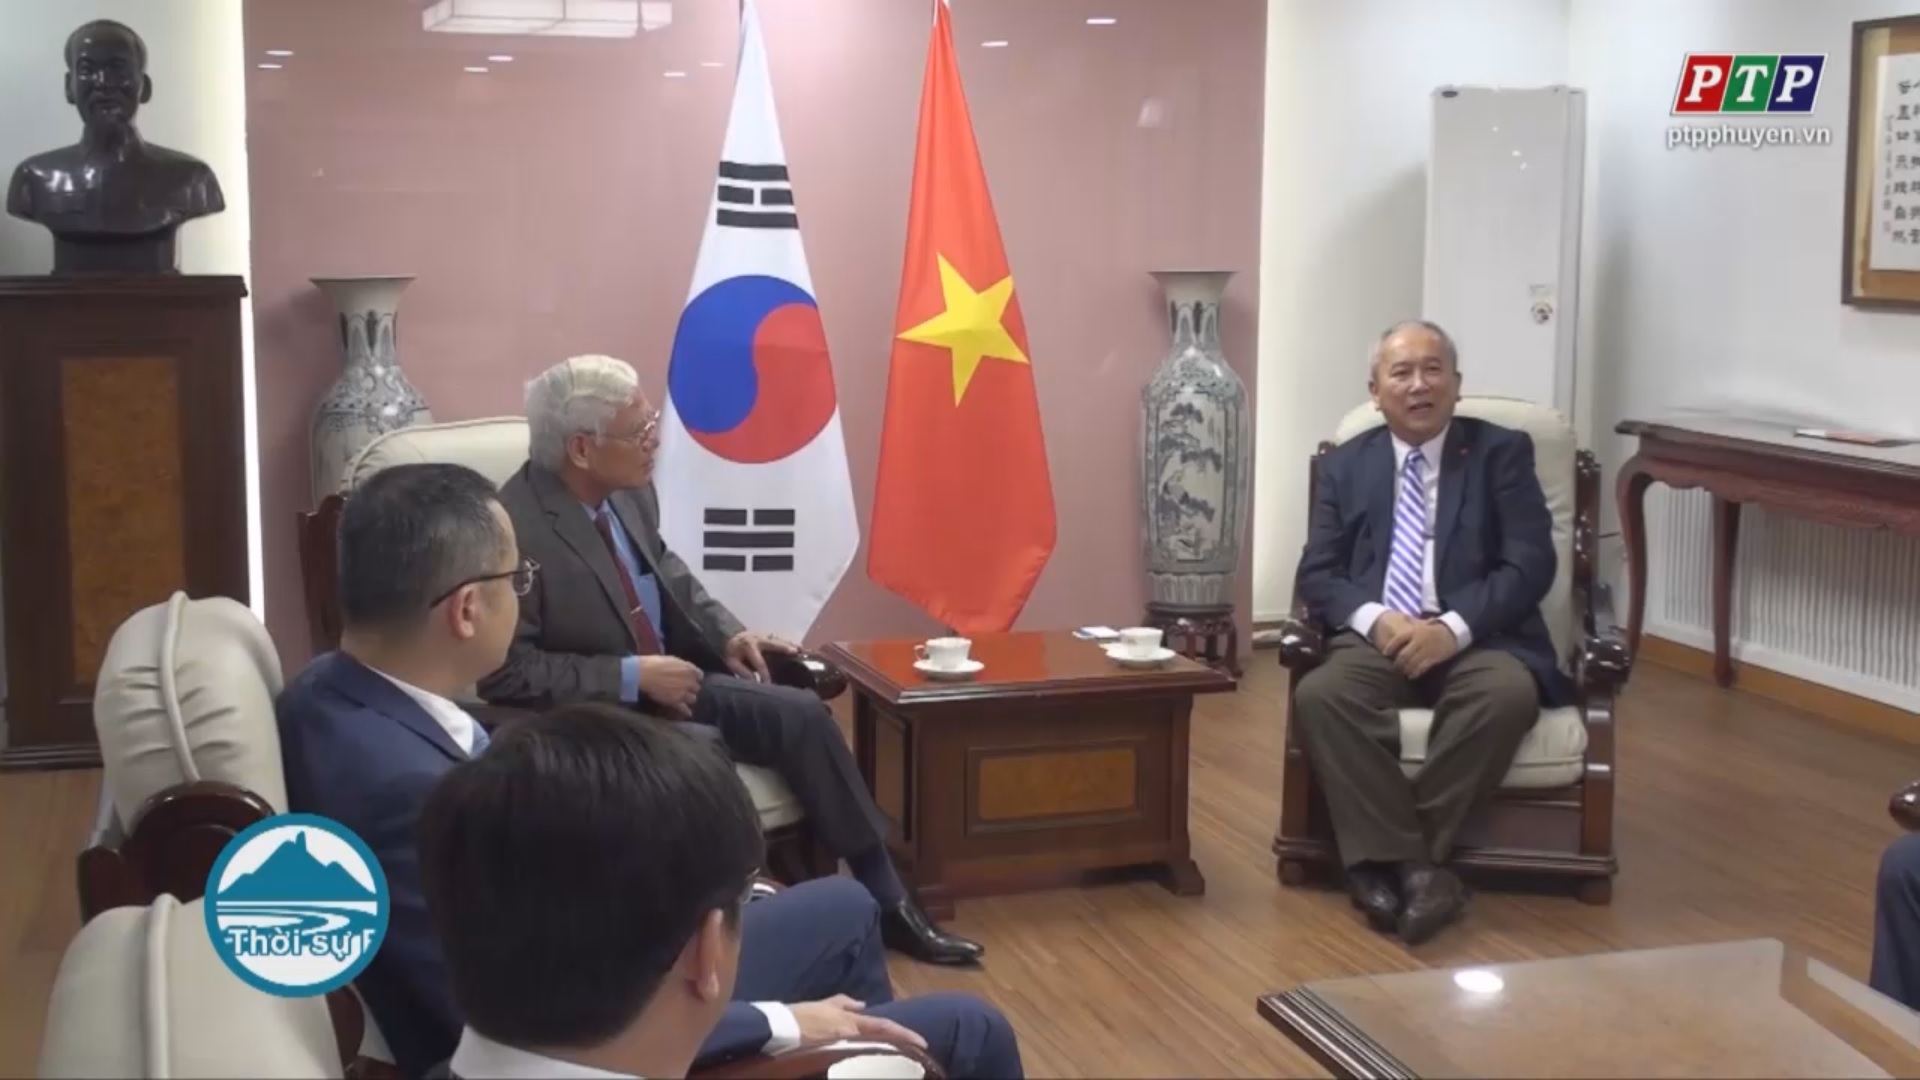 Hội nghị xúc tiến đầu tư Phú Yên tại Hàn Quốc